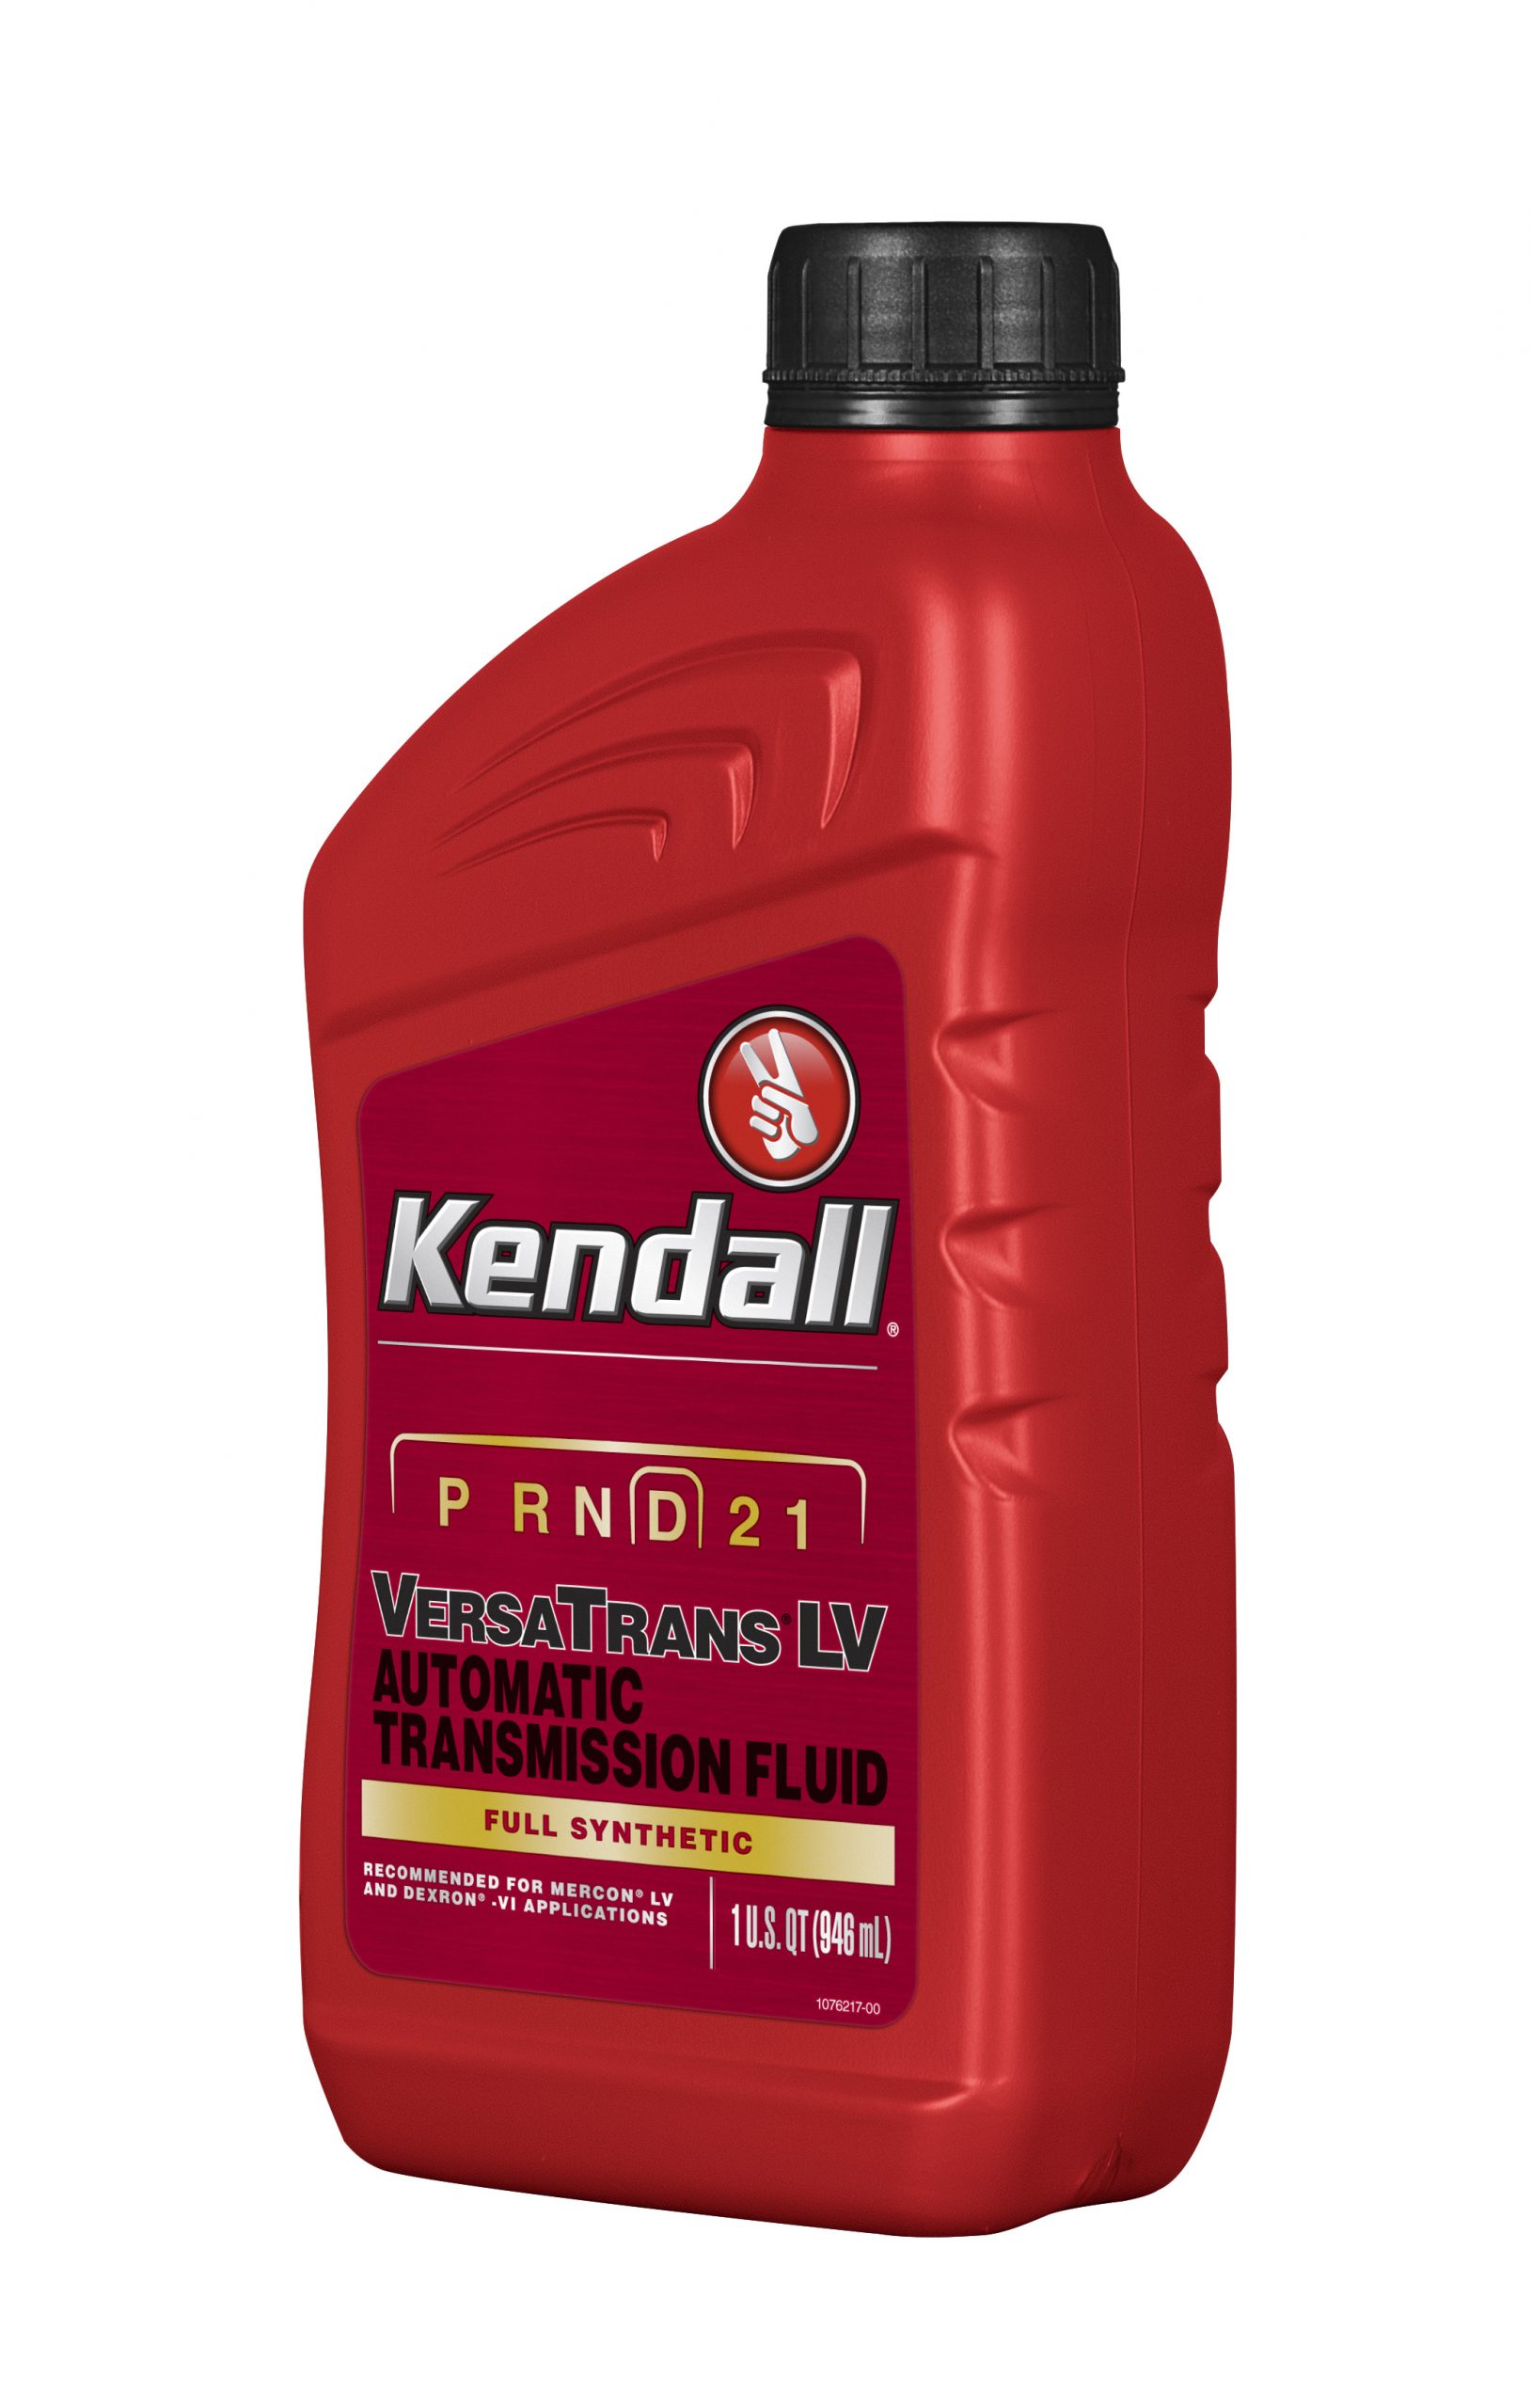 VERSATRANS® LV ATF - Kendall Motor Oil